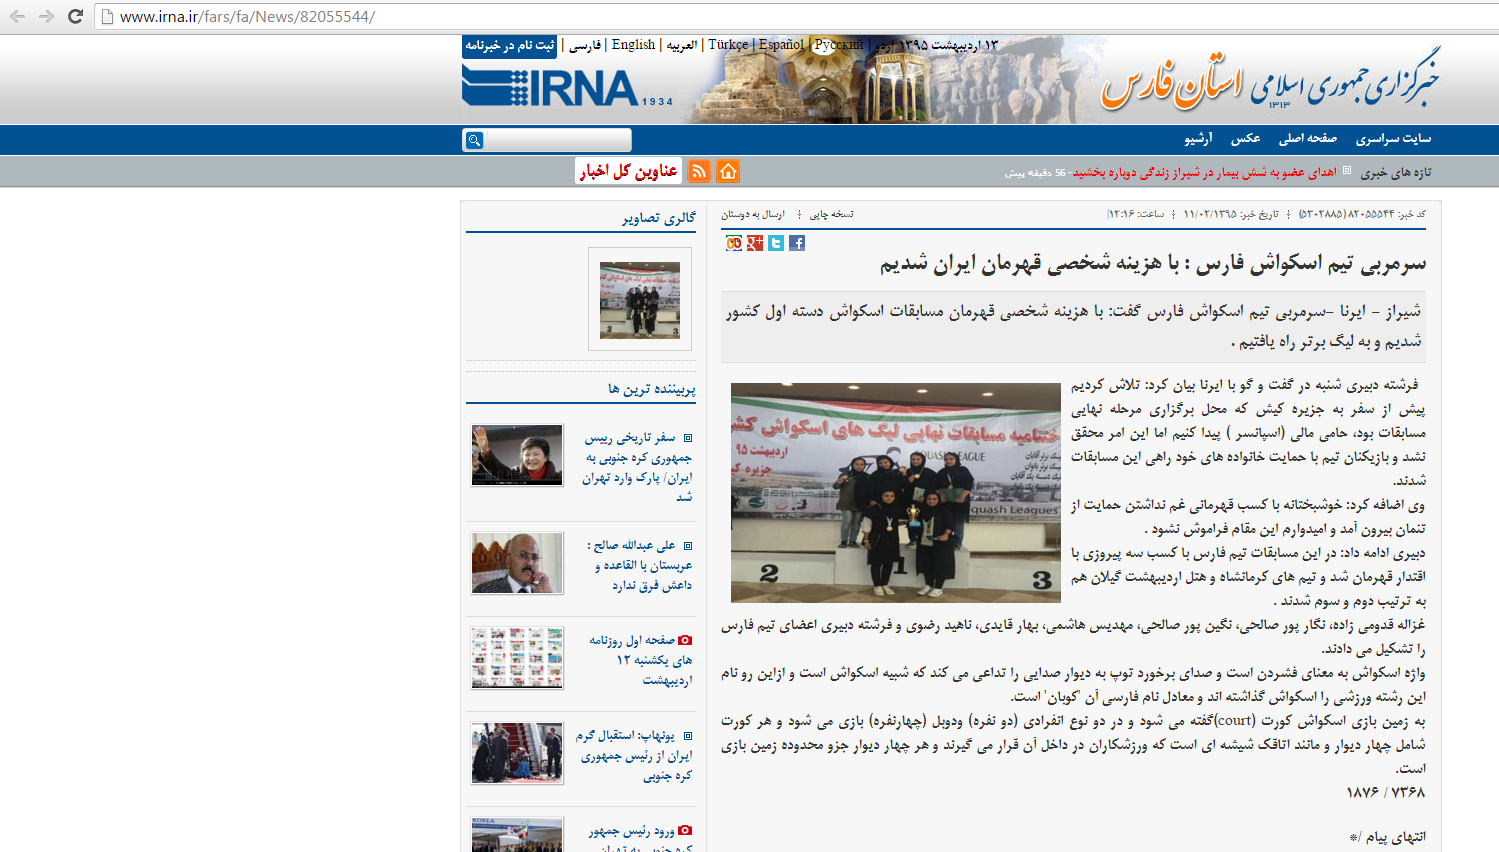 عکس خبر در خبرگزاری ایرنا استان فارس